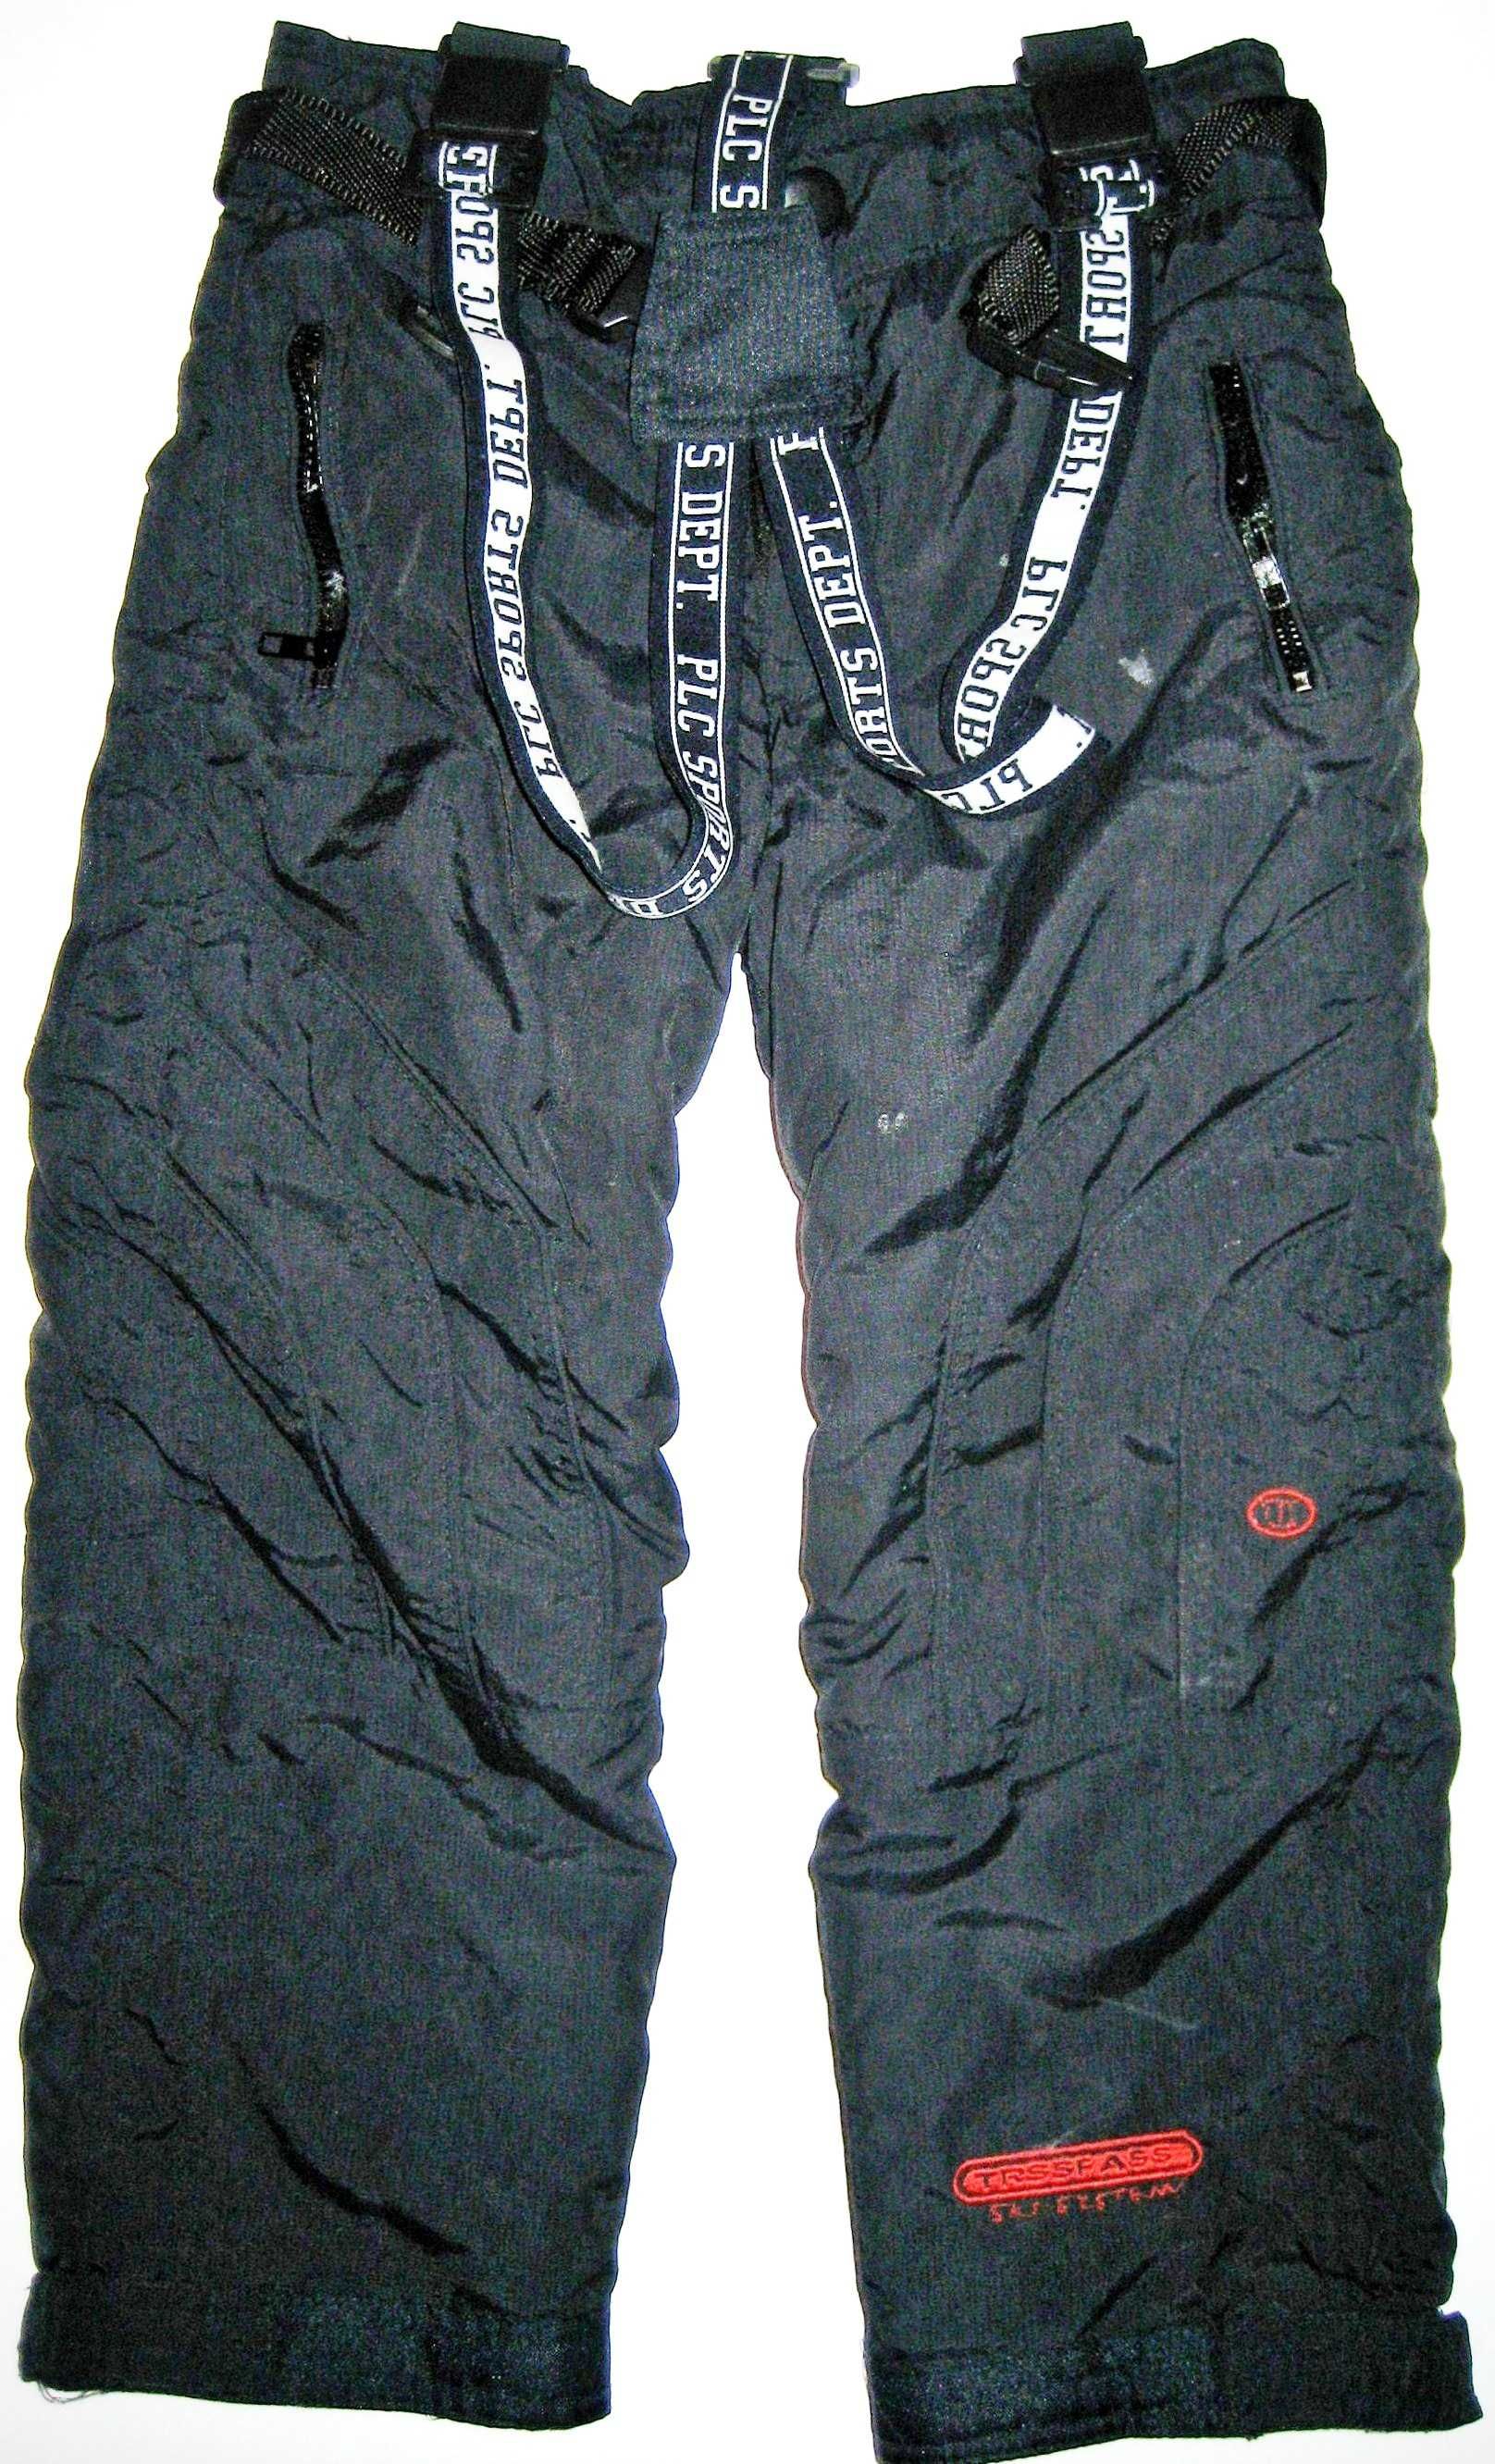 Детские лыжные зимние брюки с подтяжками, на 5-8 лет - 7000 тенге